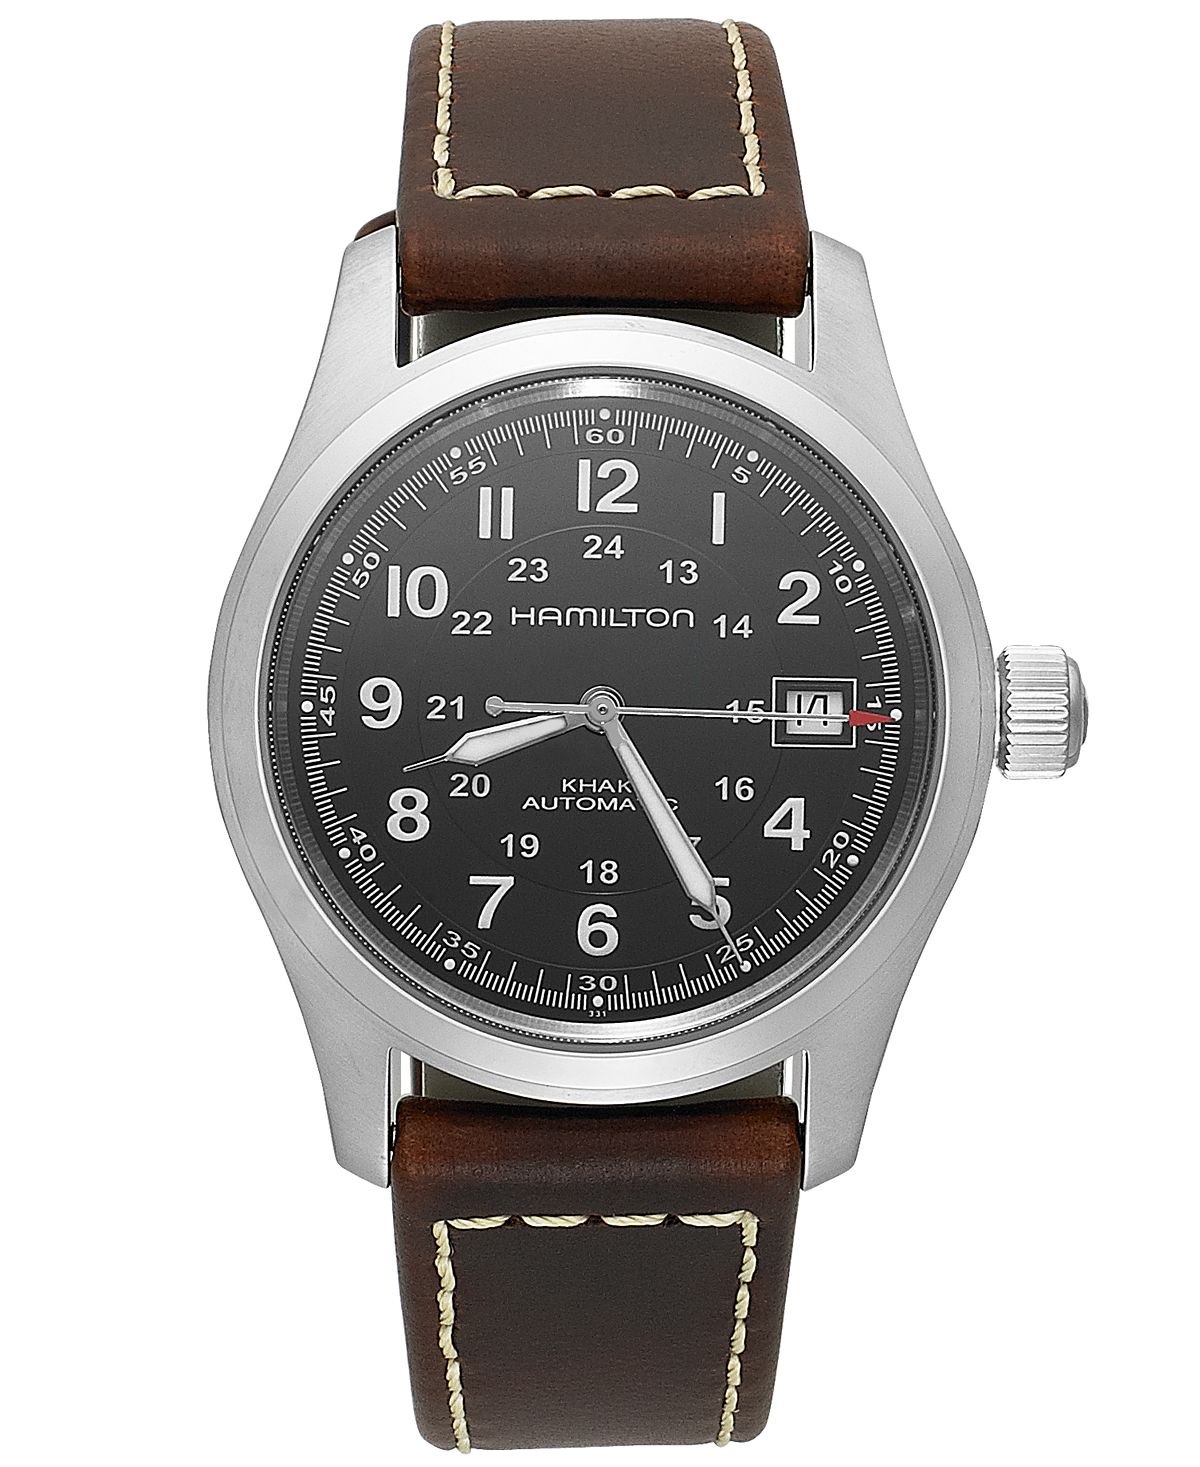 Мужские швейцарские автоматические часы цвета хаки с коричневым кожаным ремешком, 38 мм H70455533 Hamilton